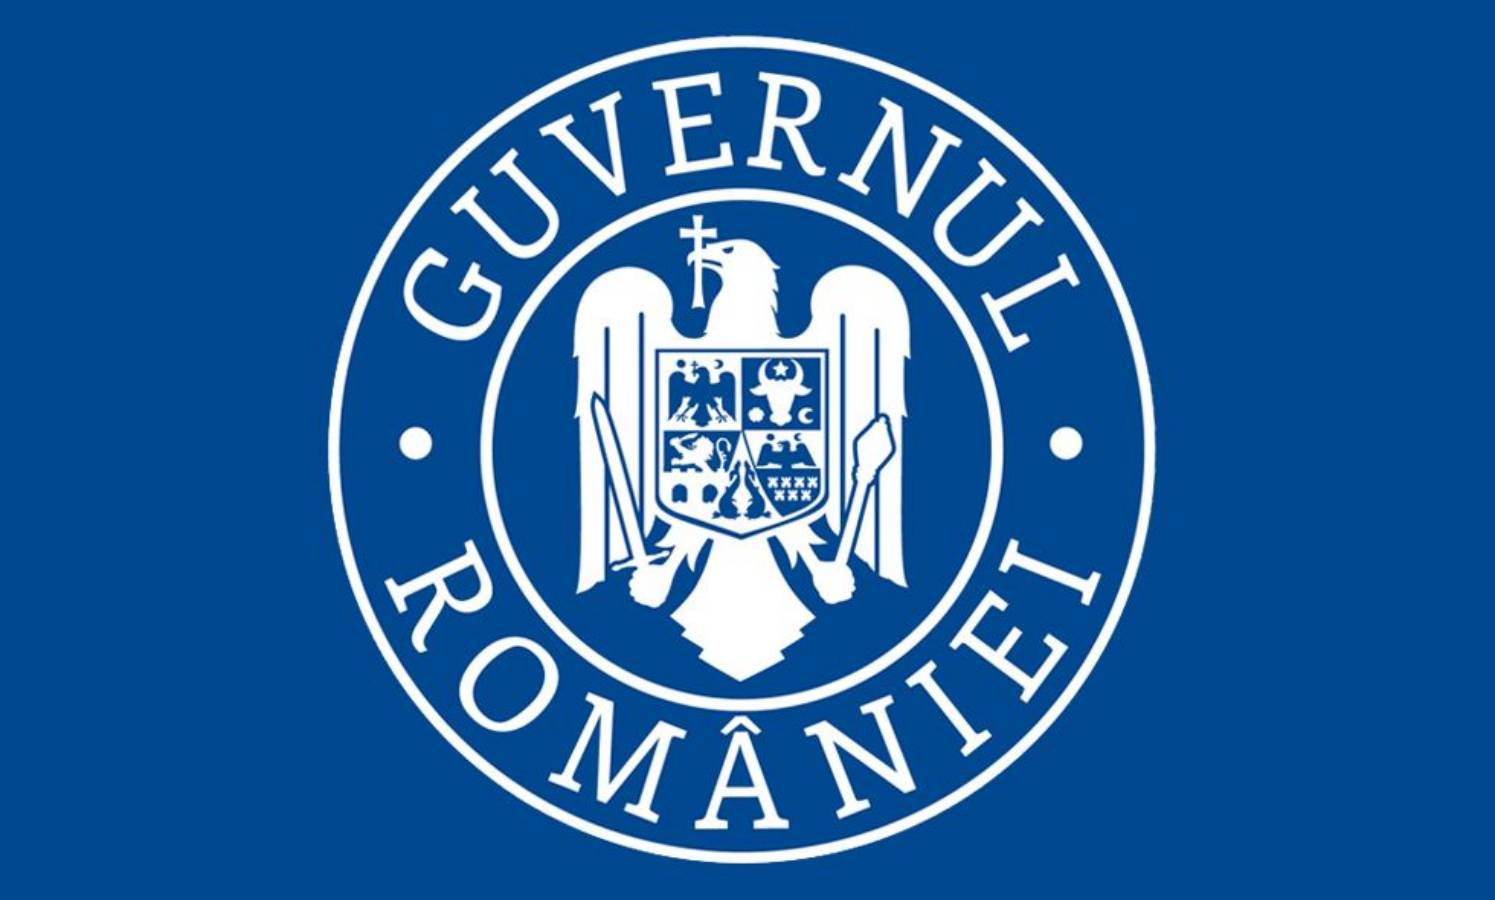 De regering van Roemenië neemt de nieuwe versoepelingsmaatregelen op 15 juni aan